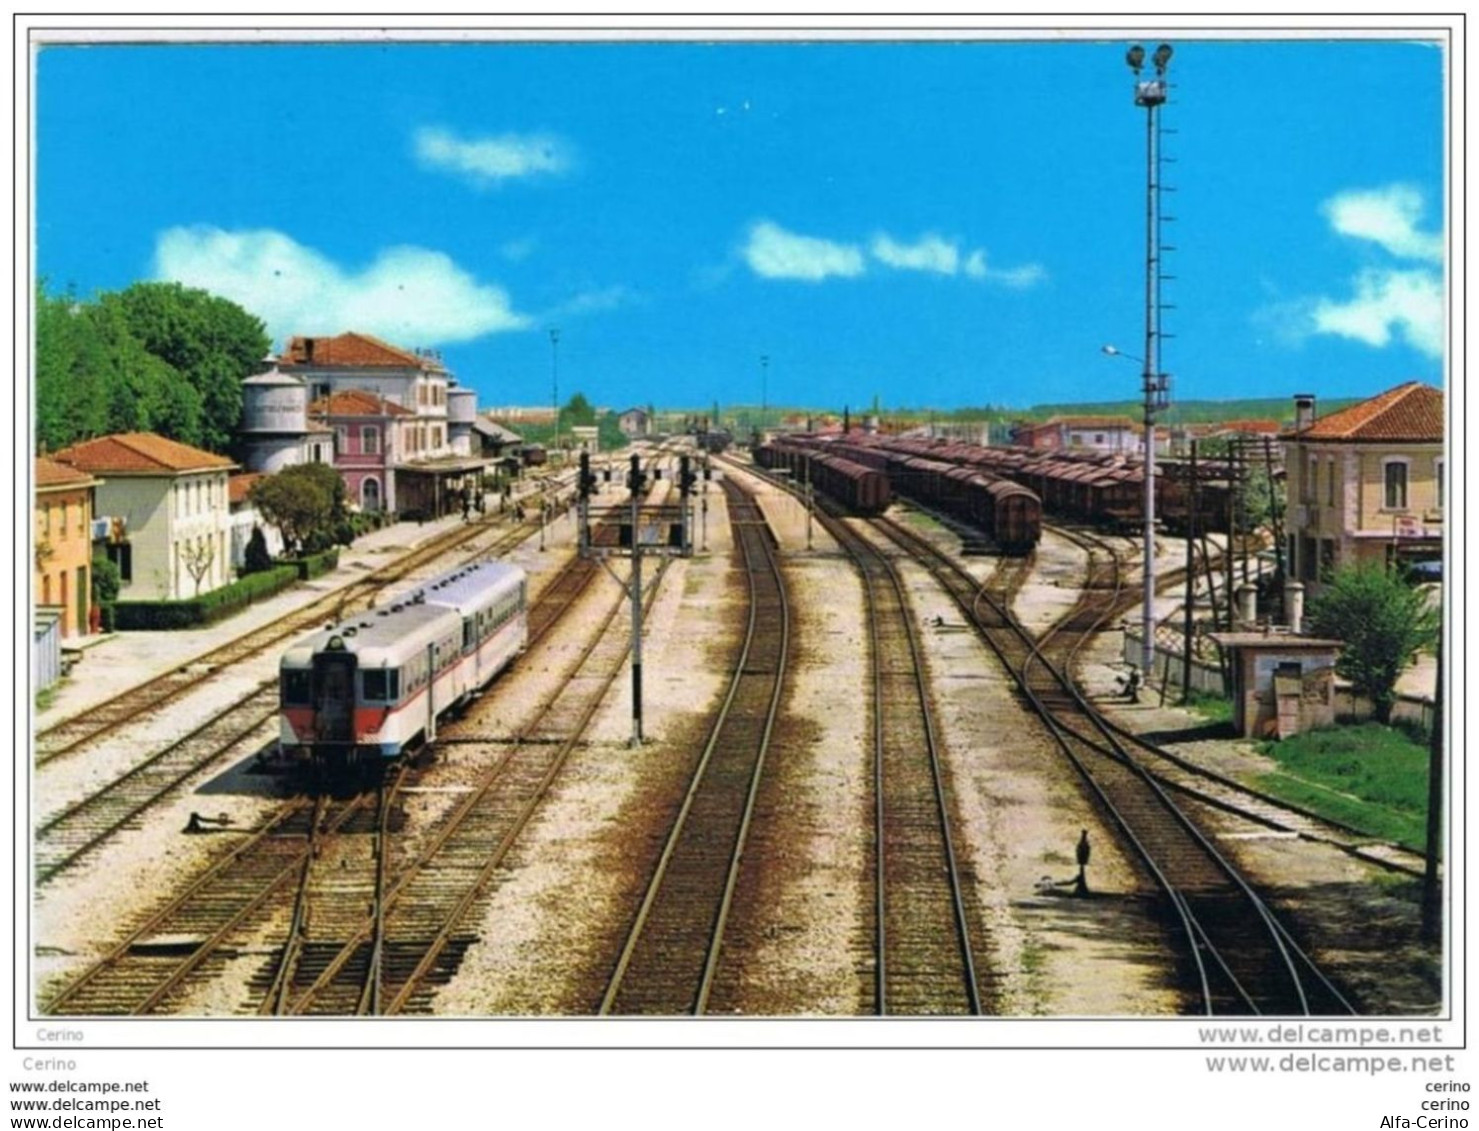 CASTELFRANCO  VENETO (TV):  STAZIONE  FERROVIARIA  -  FG - Stations With Trains